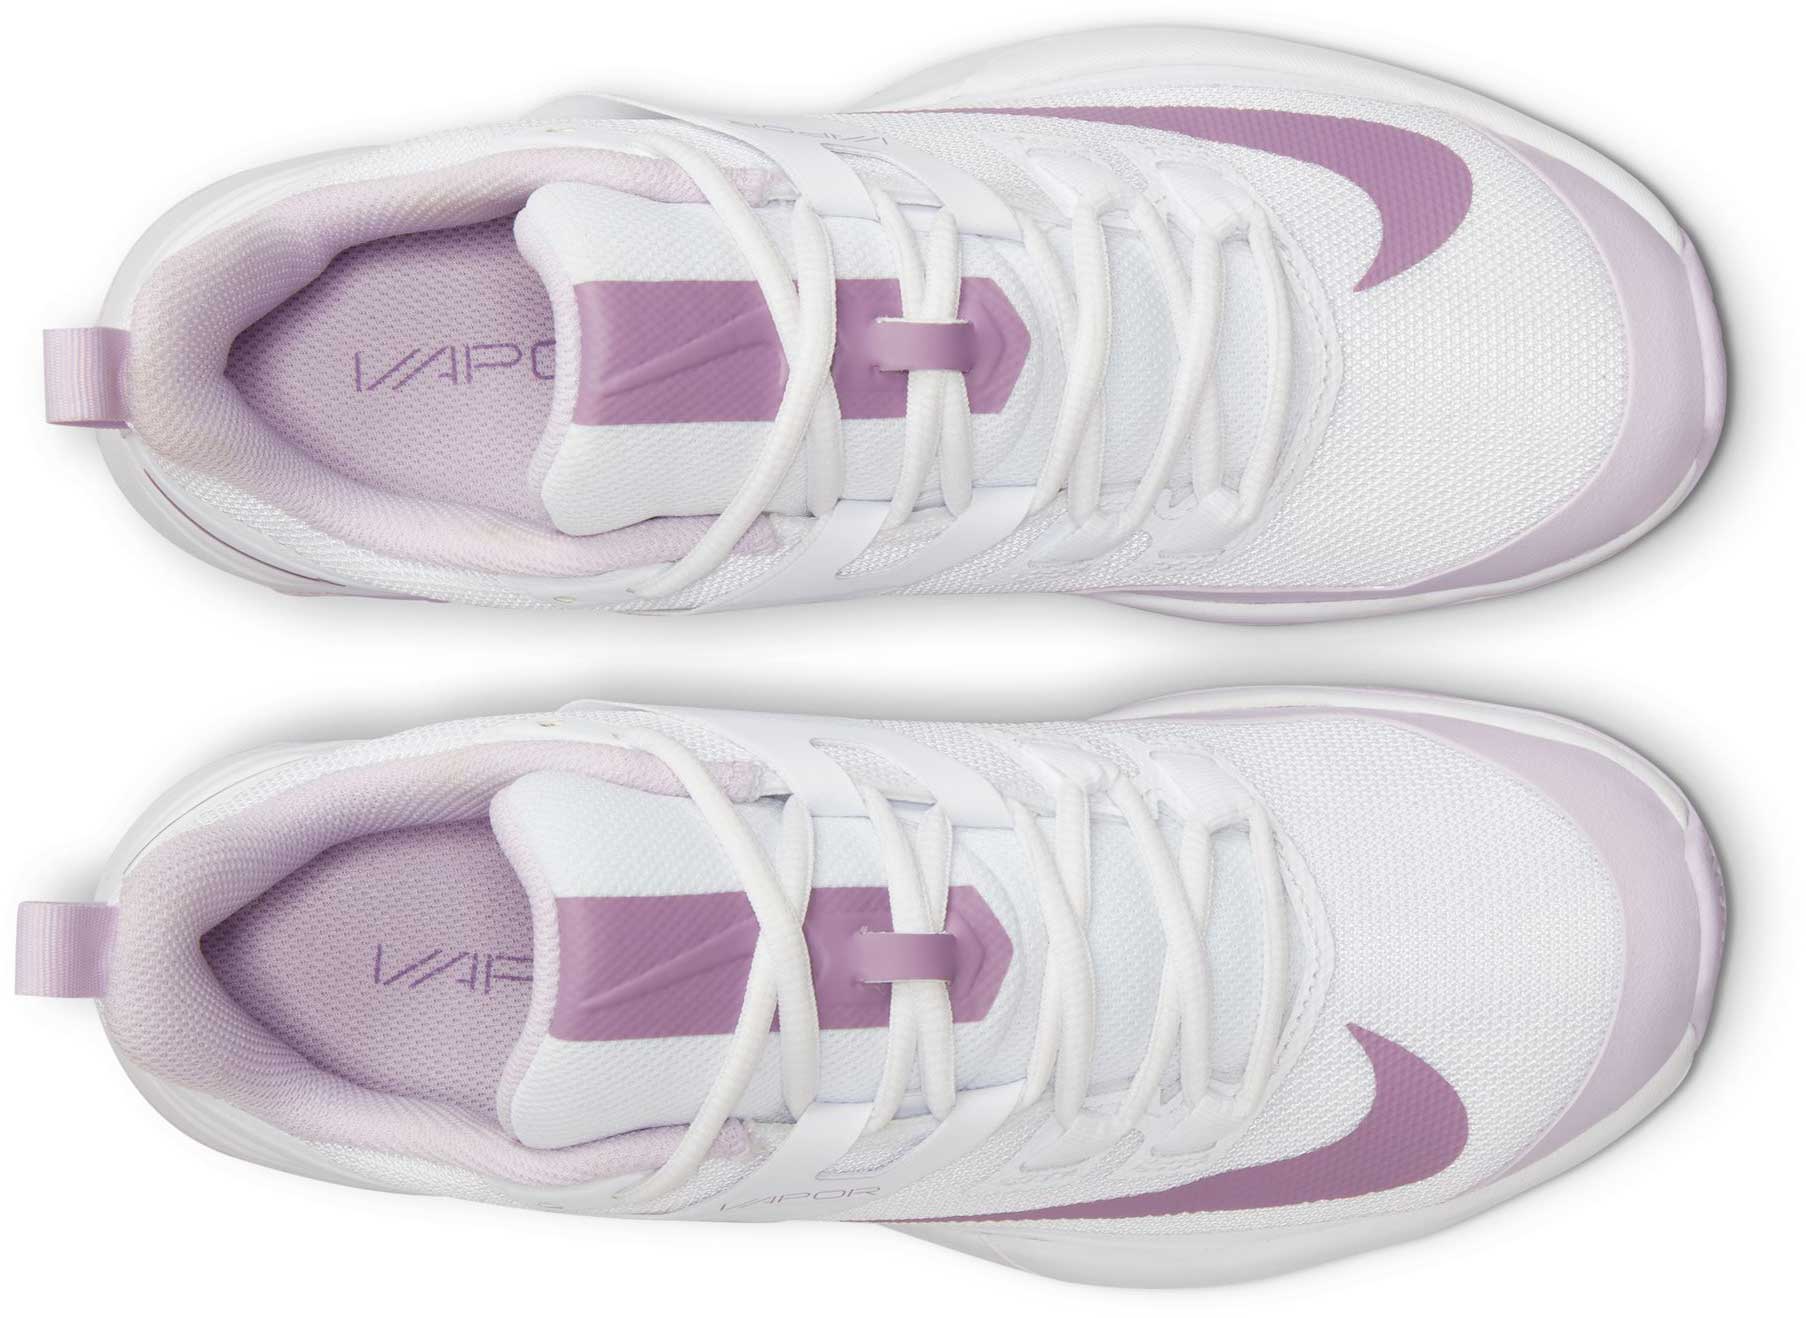 Women’s tennis shoes